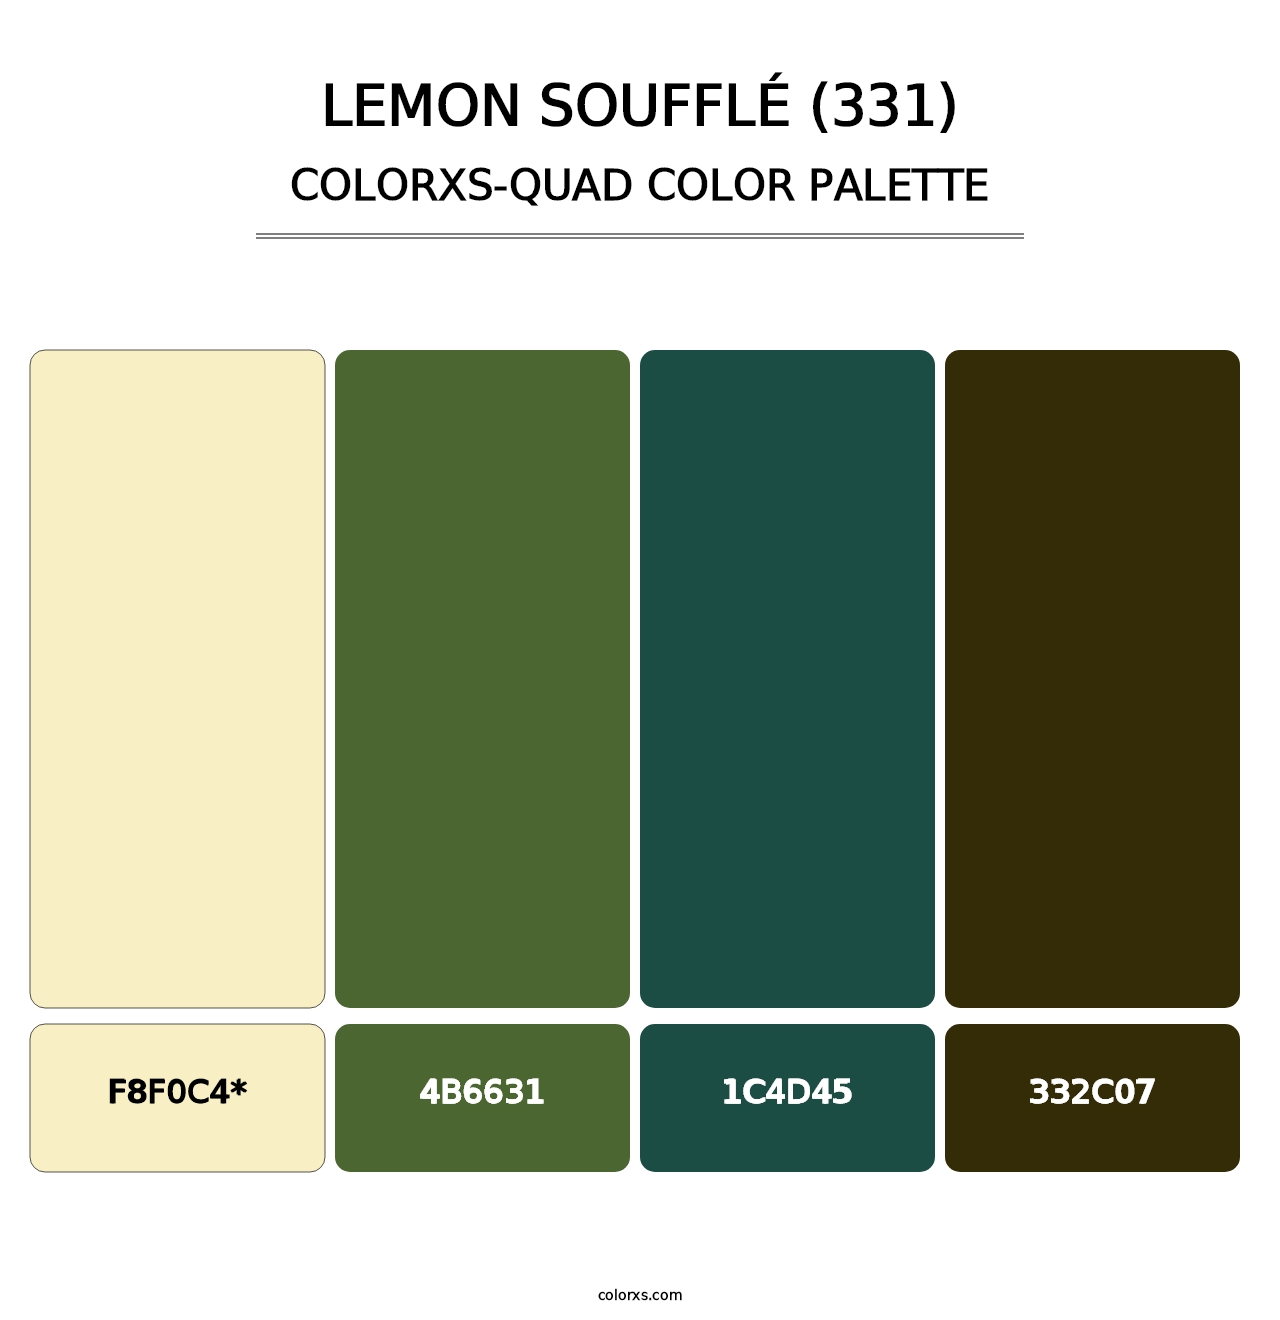 Lemon Soufflé (331) - Colorxs Quad Palette